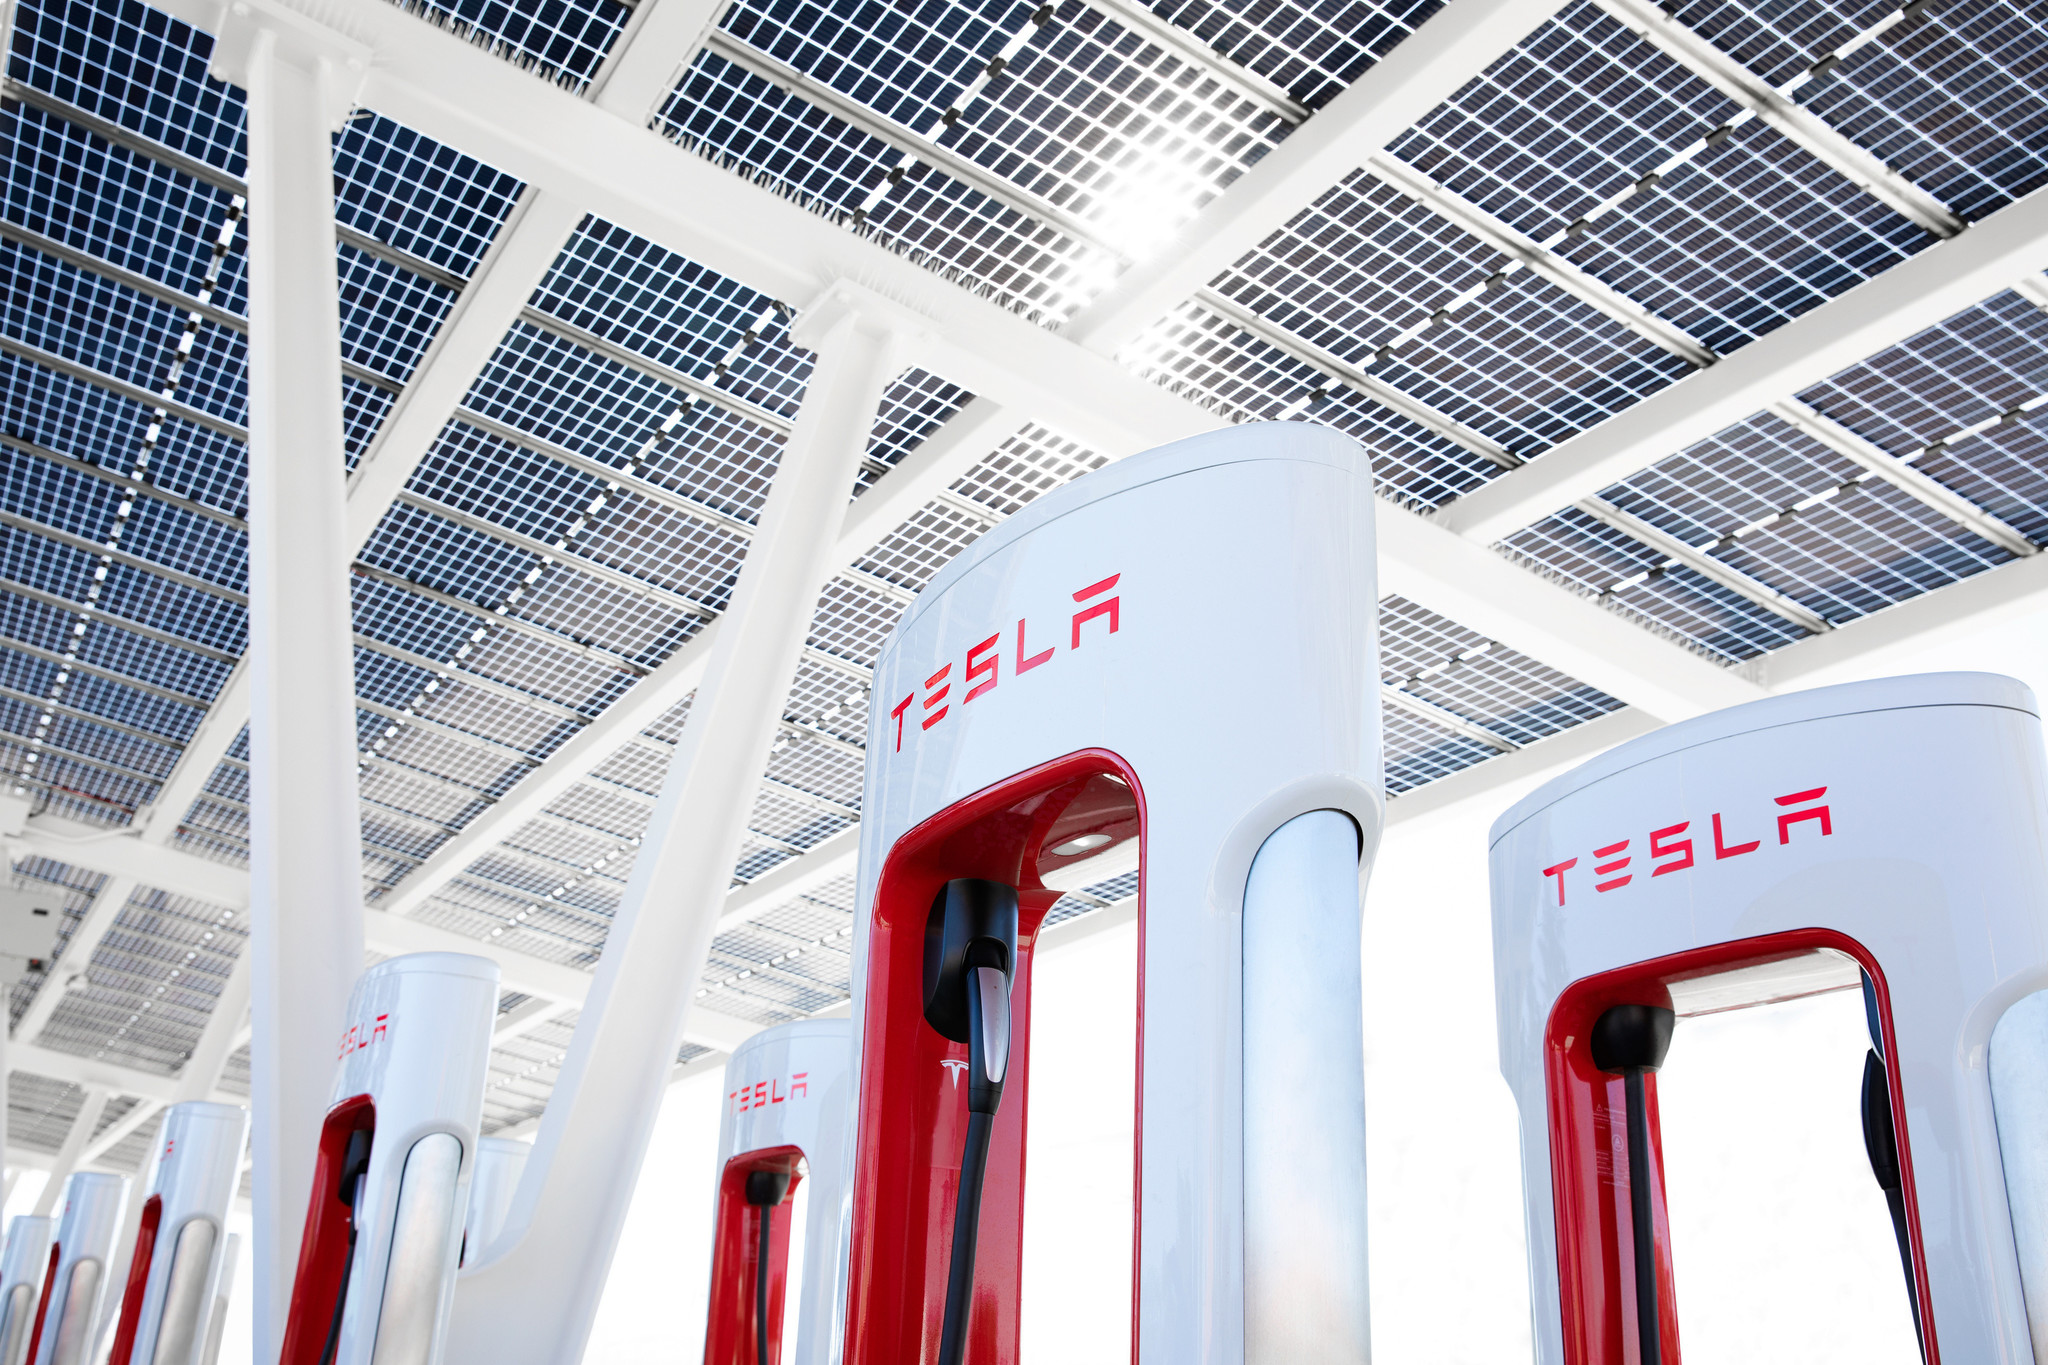 La red de Superchargers de Tesla tiene cada vez más adeptos.